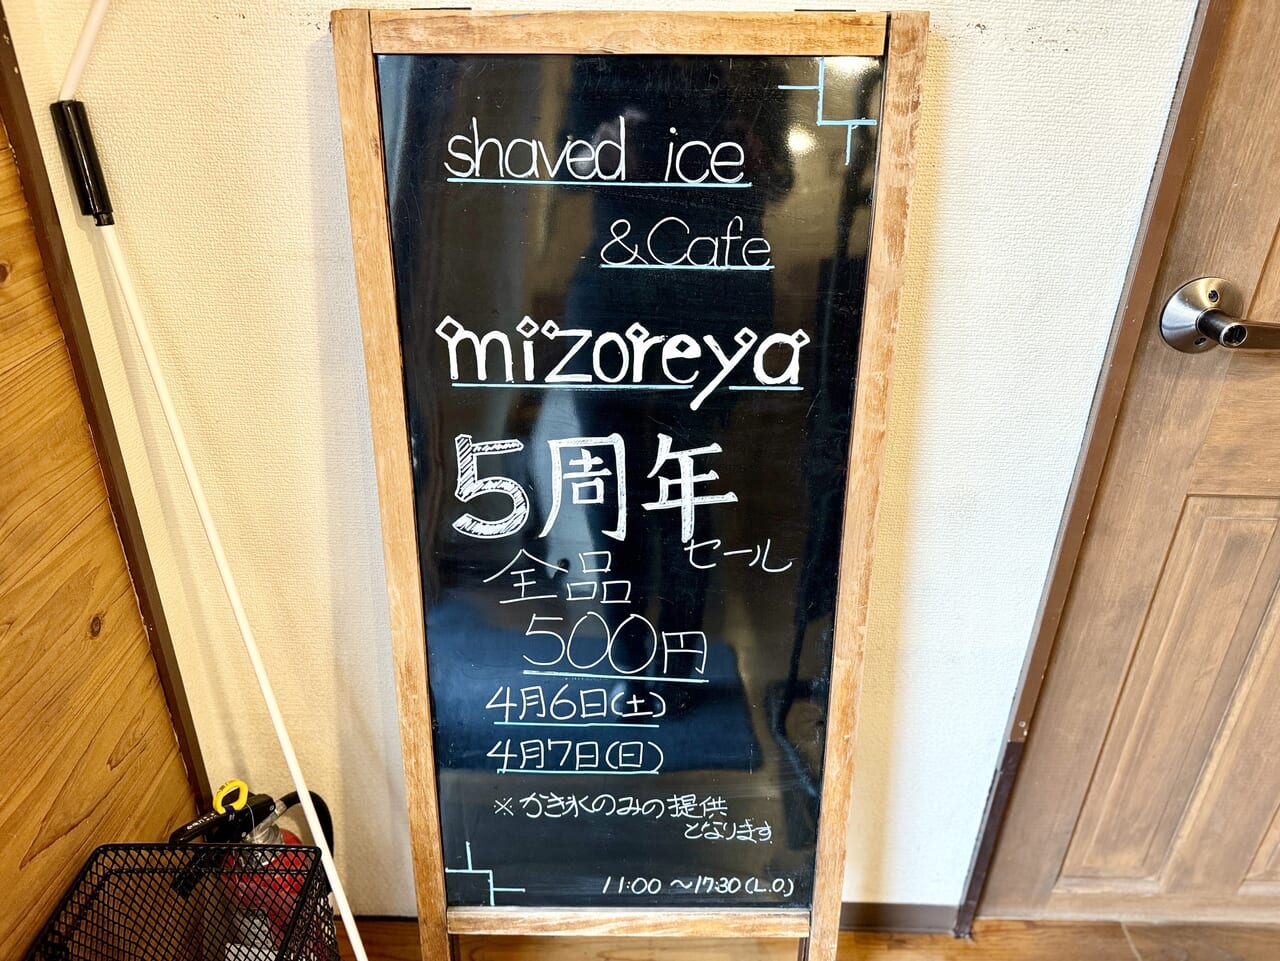 shaved ice & cafe mizoreya